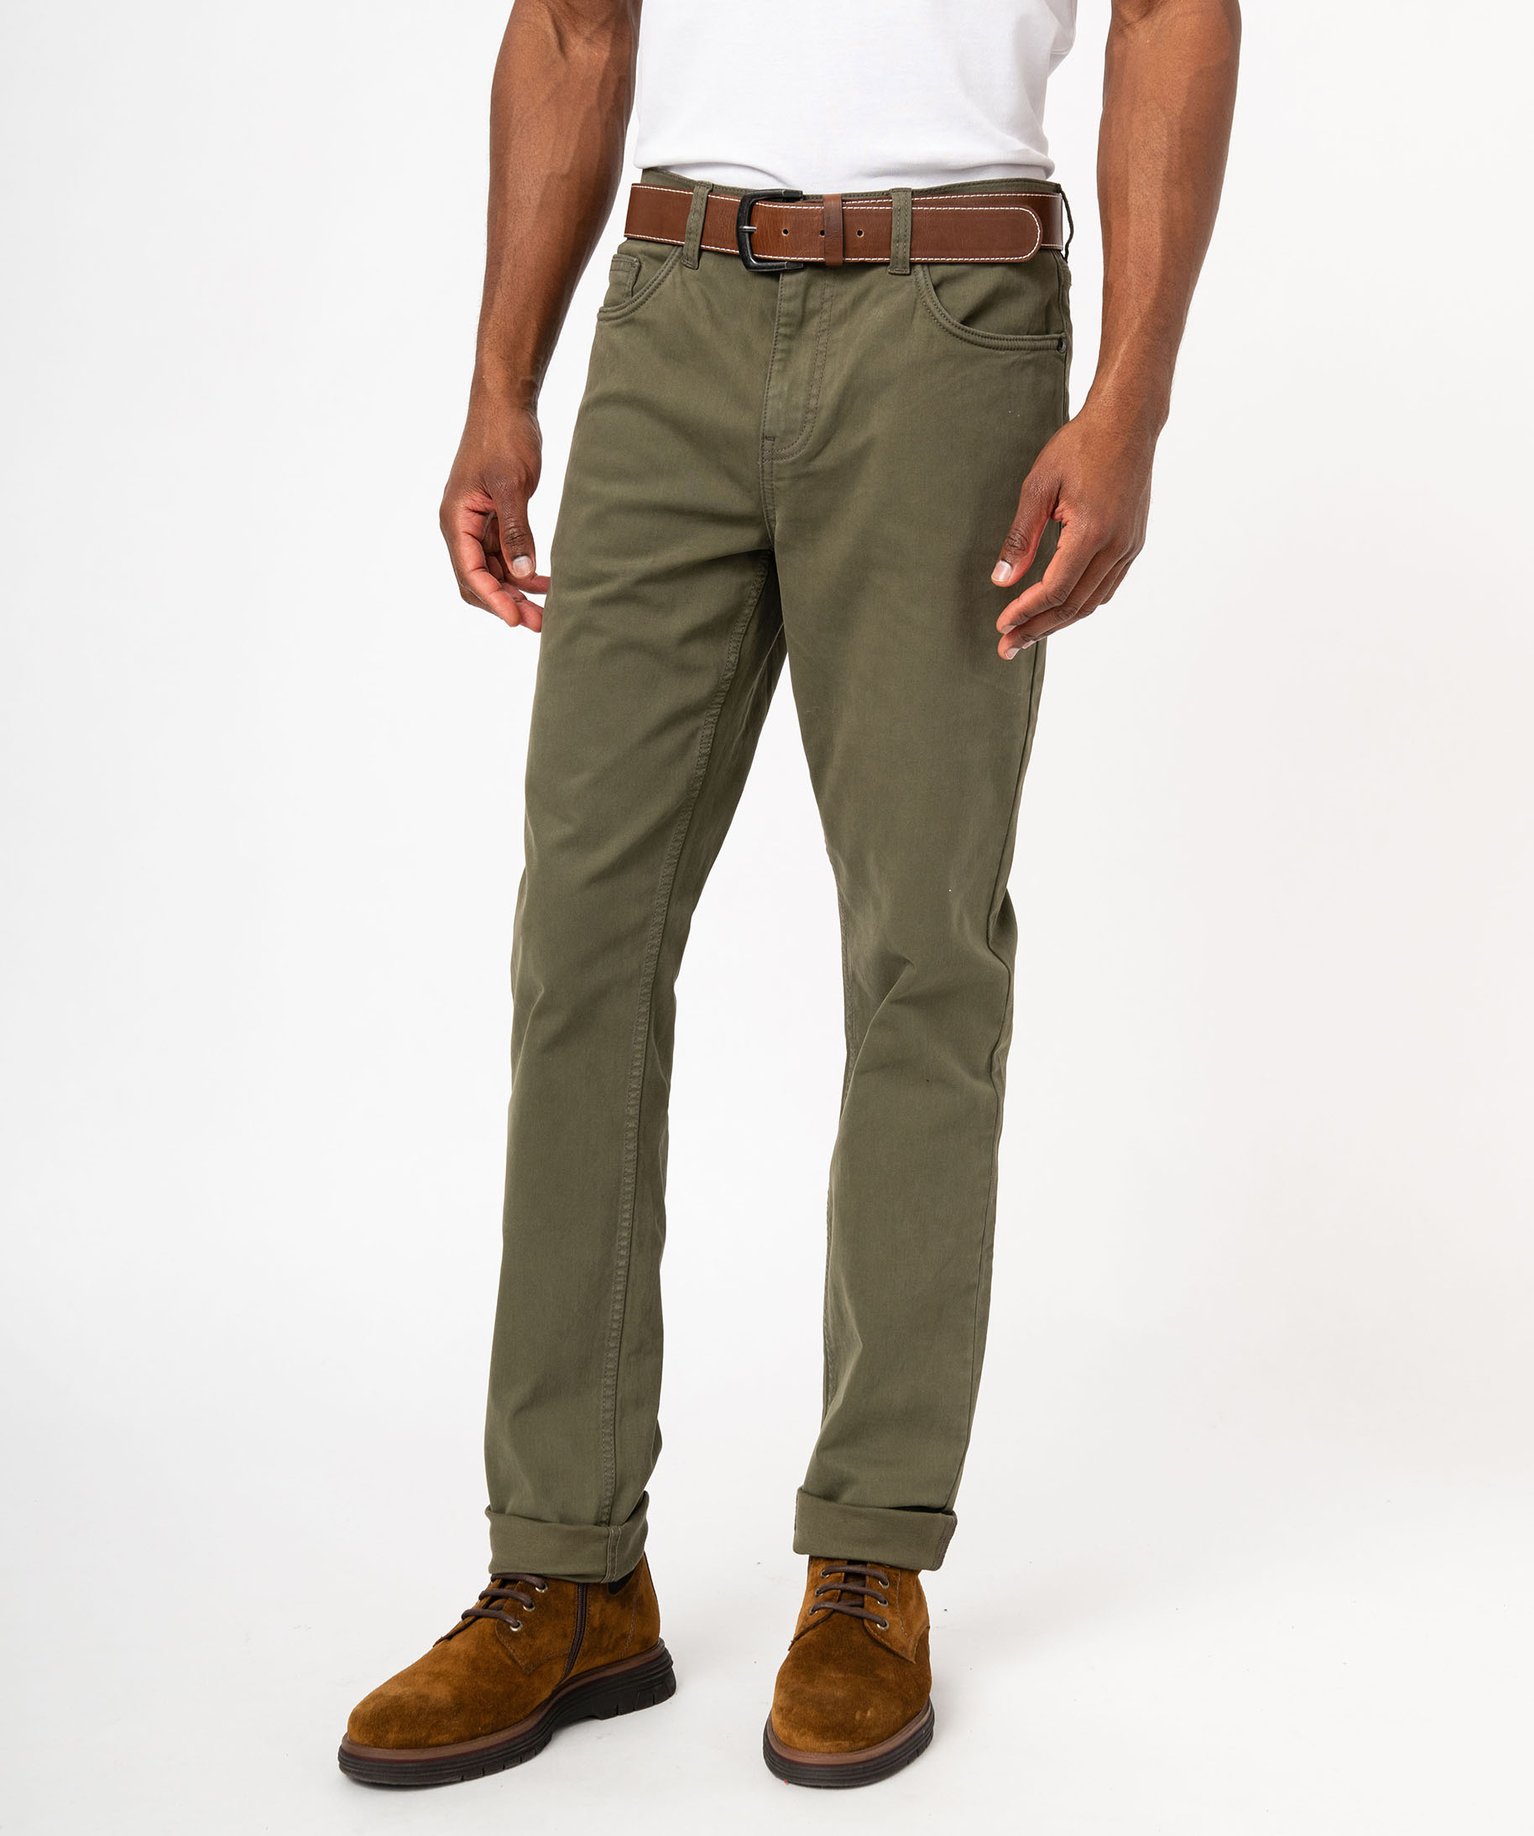 pantalon slim stretch 5 poches homme vert